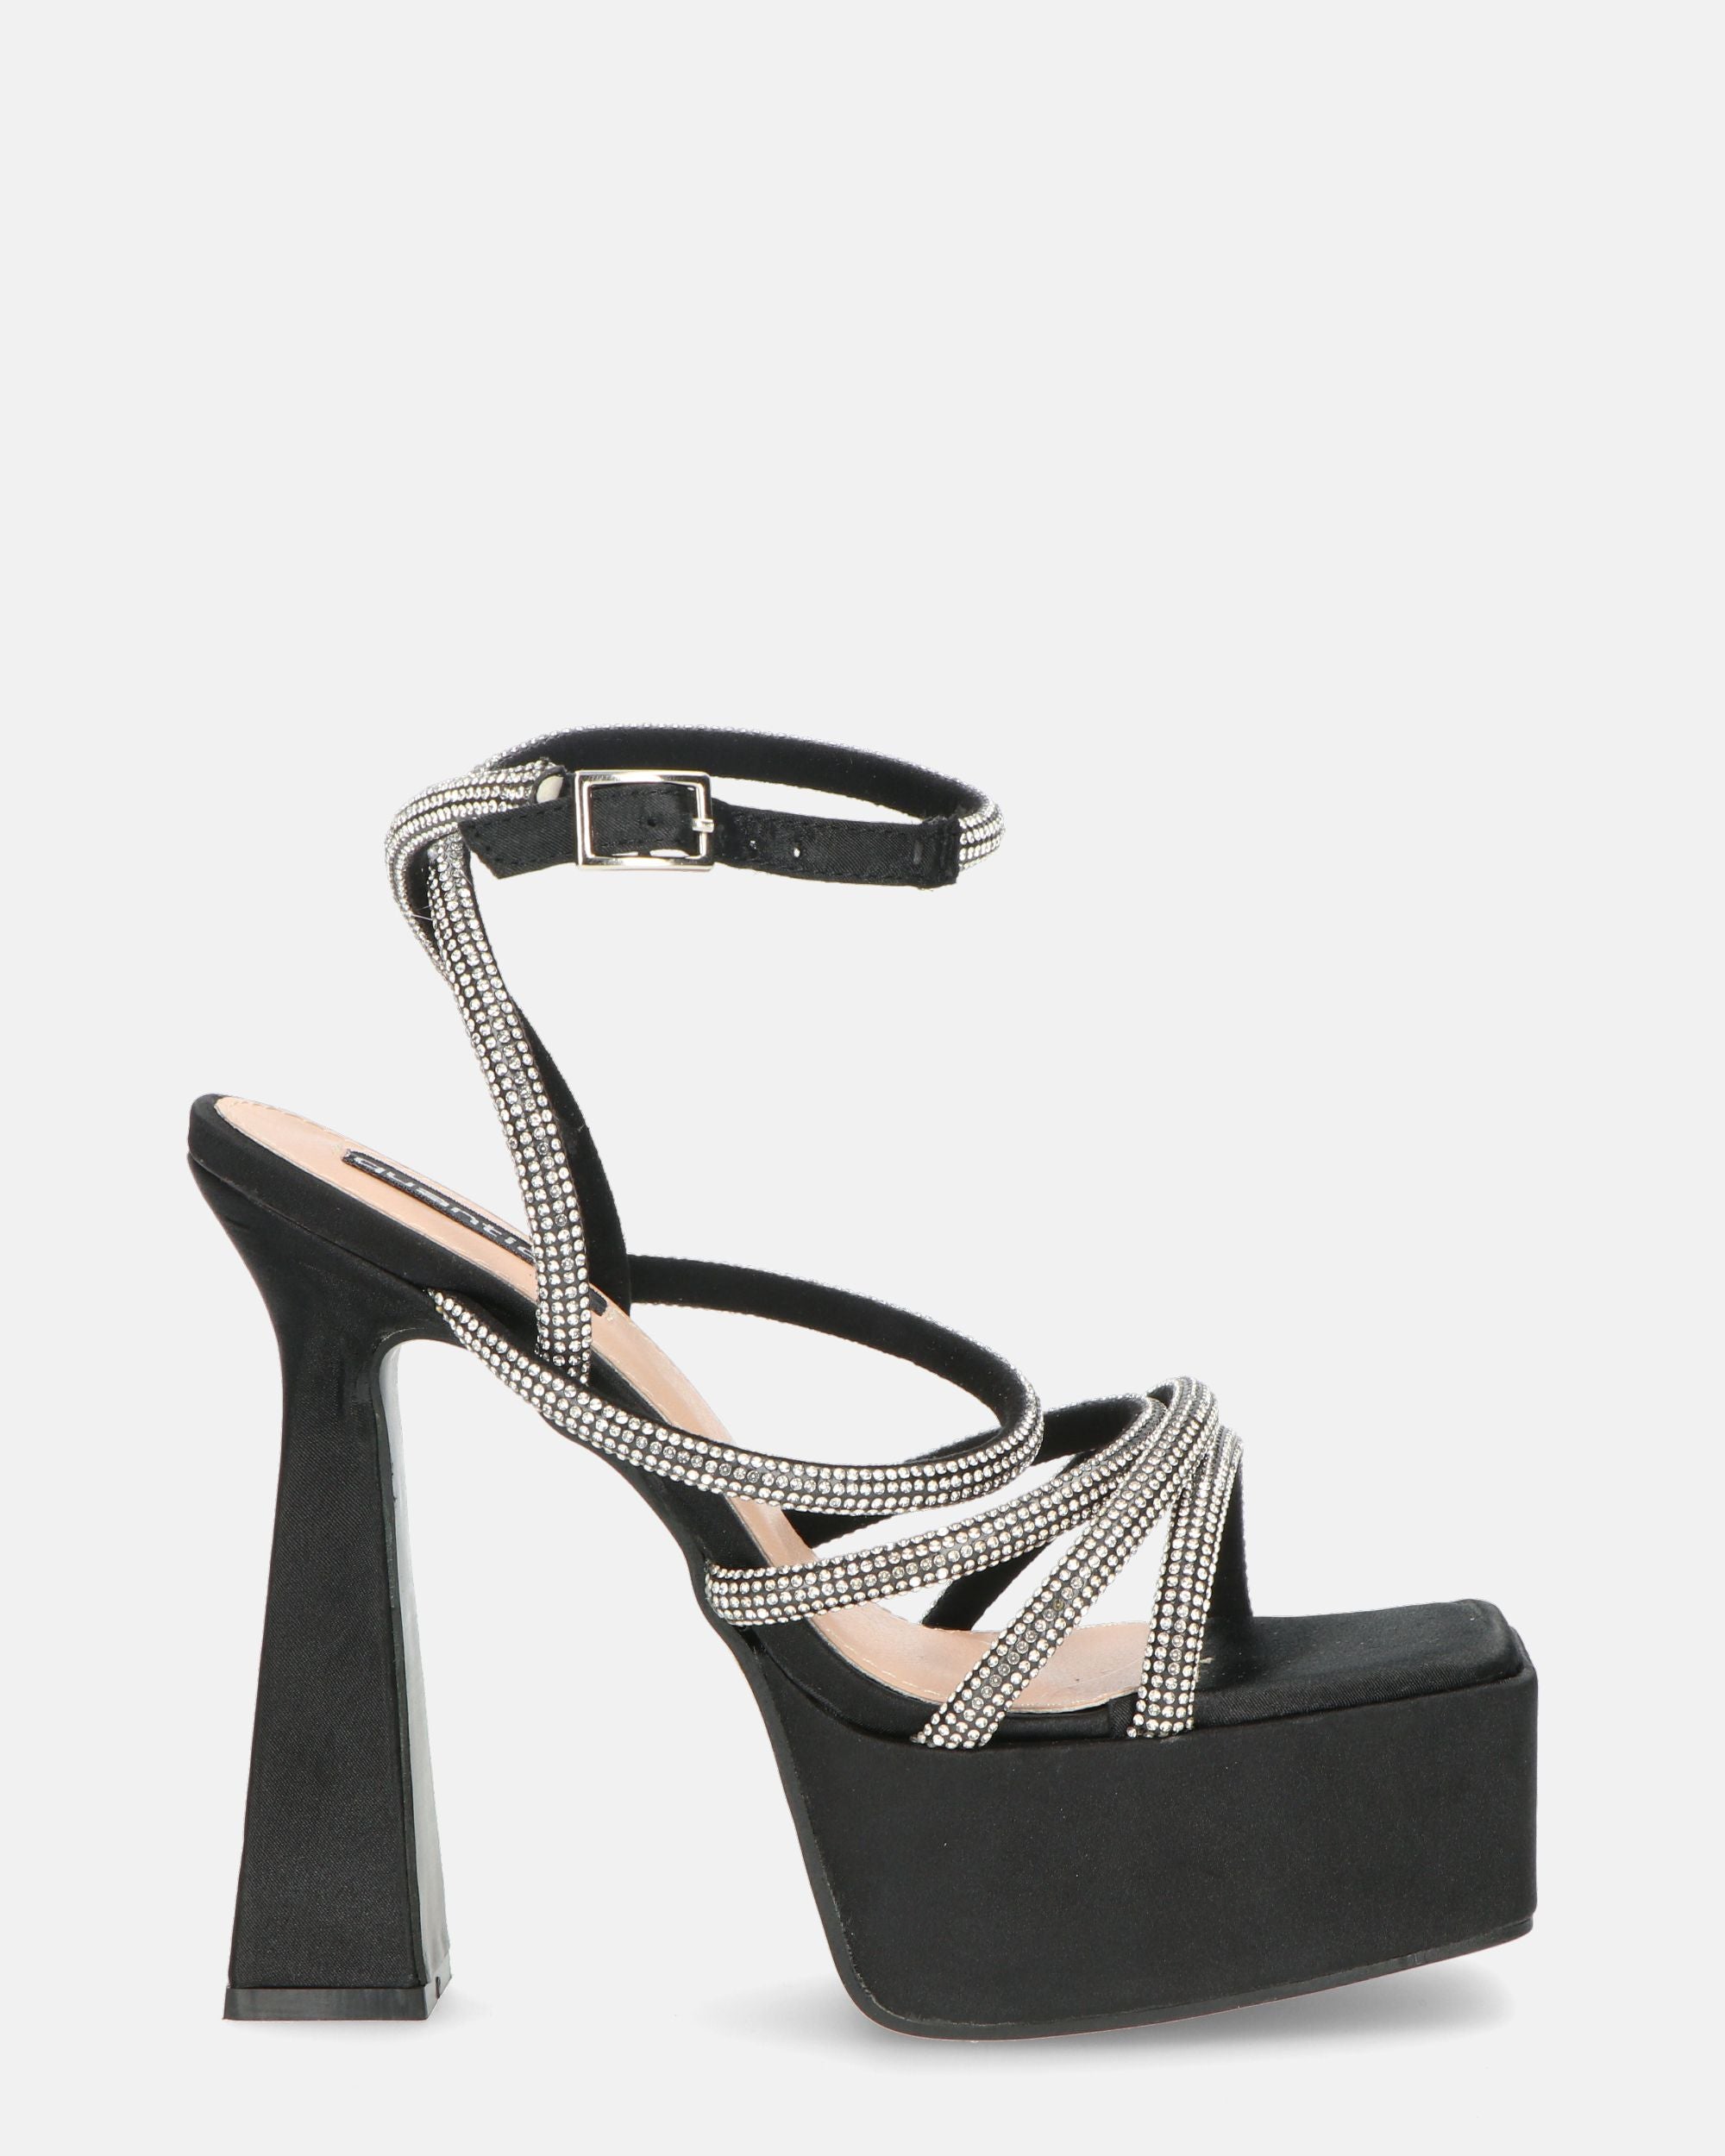 MADELYN - black lycra sandals with gems